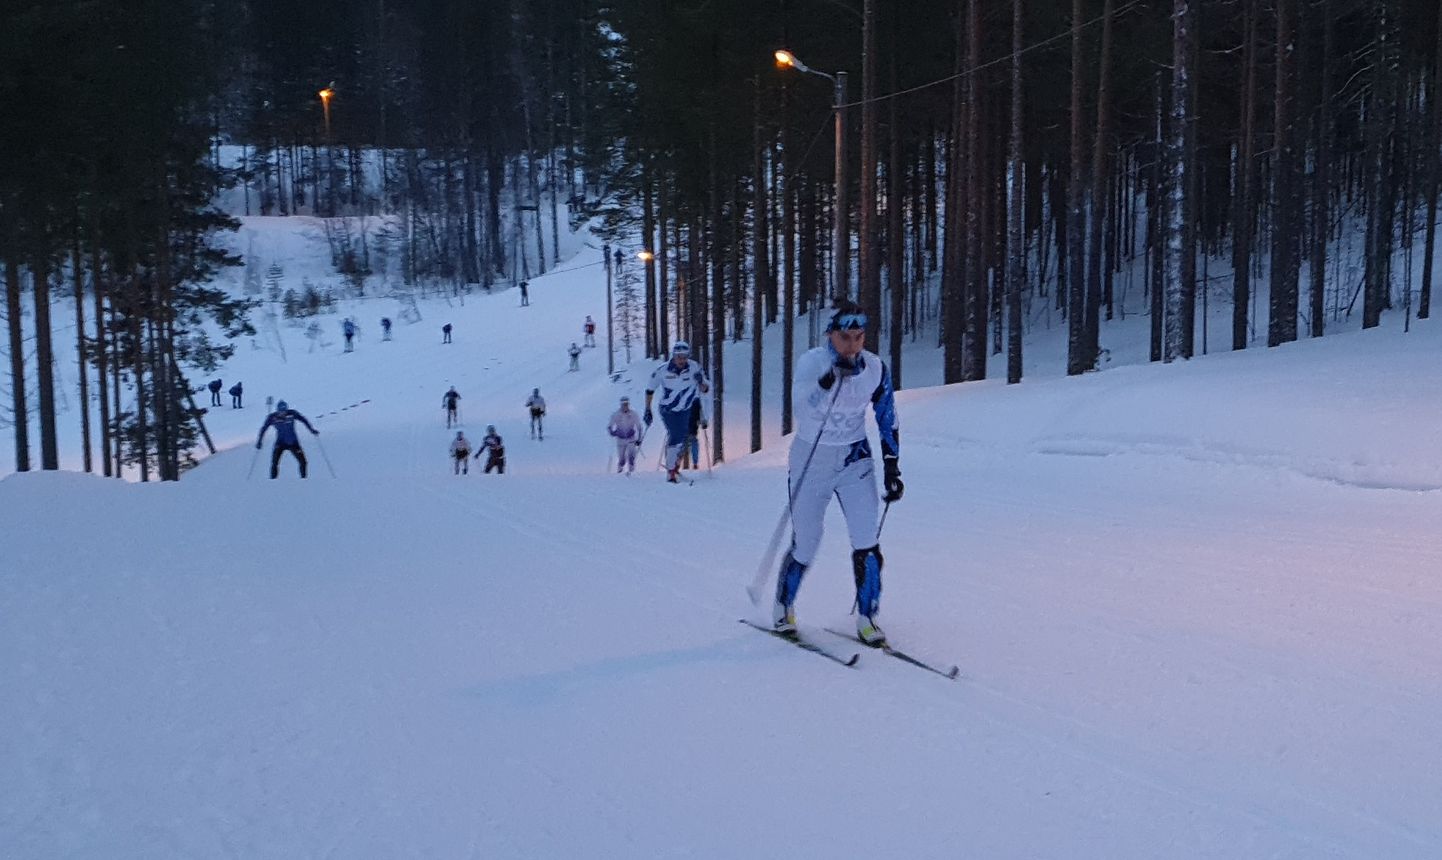 В пятницу в Северной Финляндии Авели Уусталу показала, что способна составить весомую конкуренцию в спринте лыжницам, стремящимся попасть во взрослые сборные больших лыжных держав.